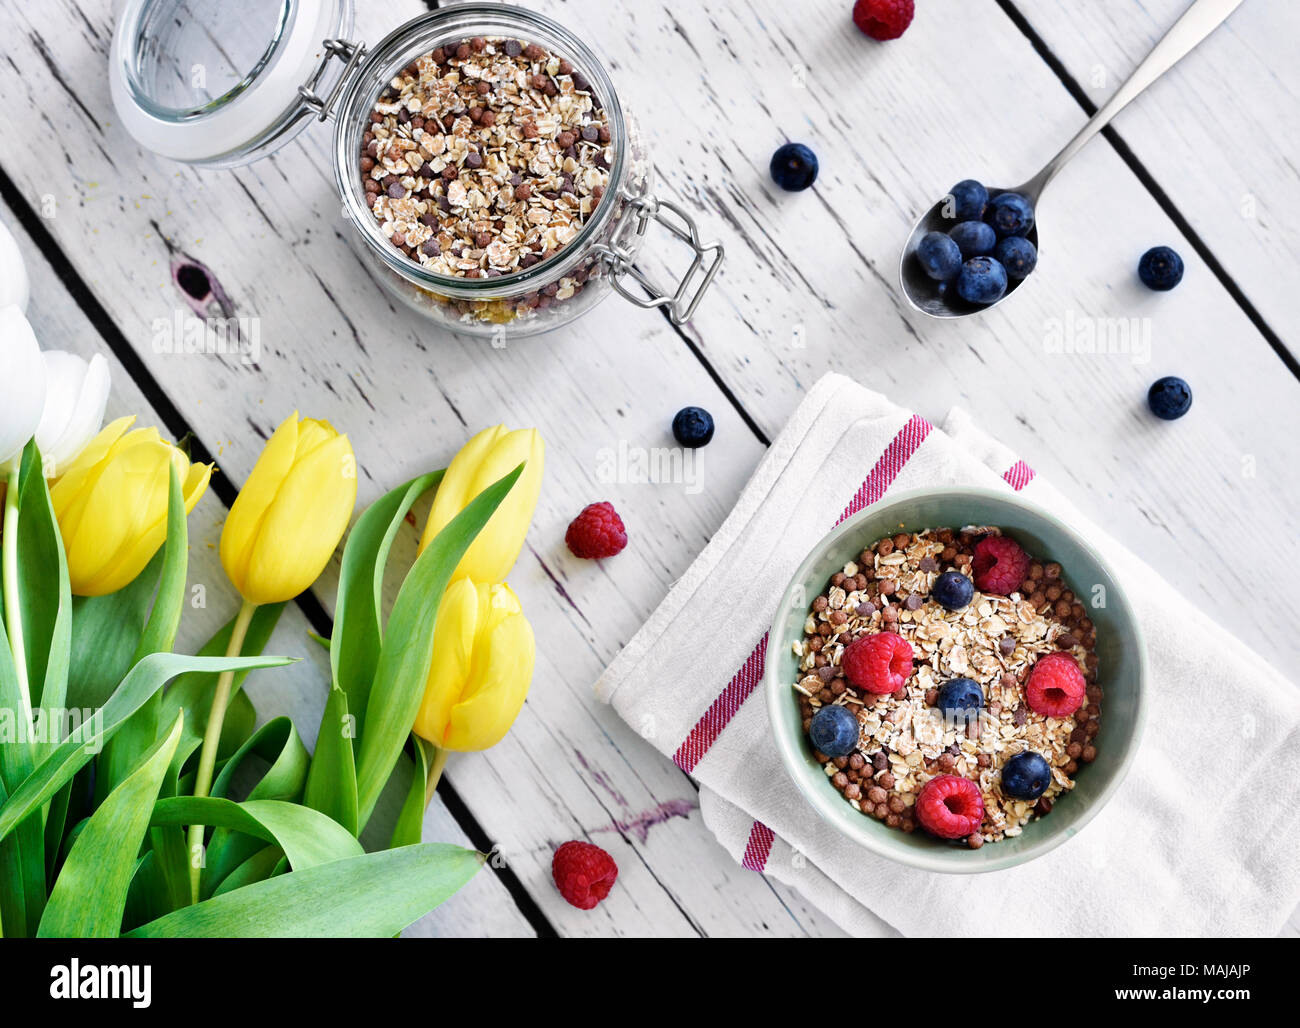 Getreide in einer Schüssel, Frühstück mit frischen Früchten und Müsli, das gesunde Essen. Frühstück Schüssel auf einem Holztisch, rustikalen Szene. Stockfoto